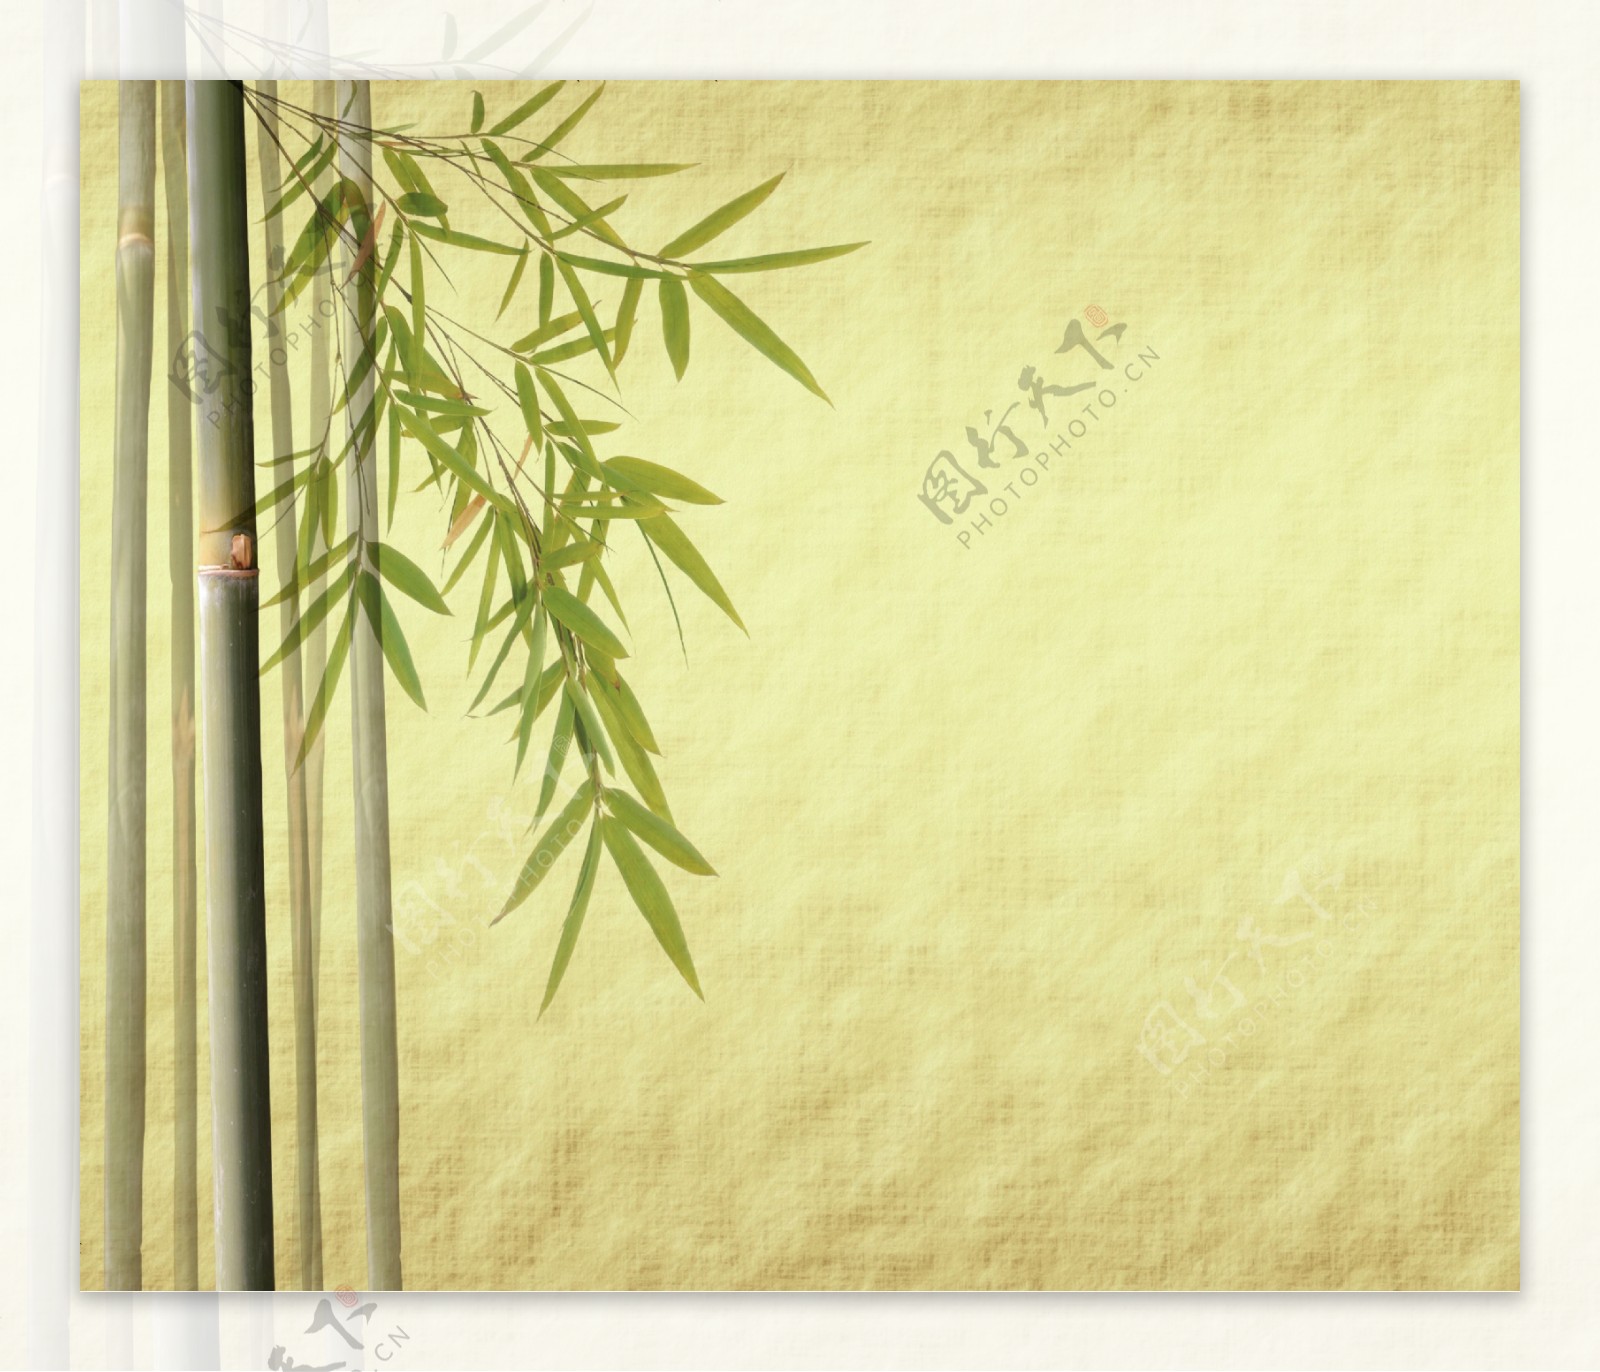 怀旧绿色竹子背景图片